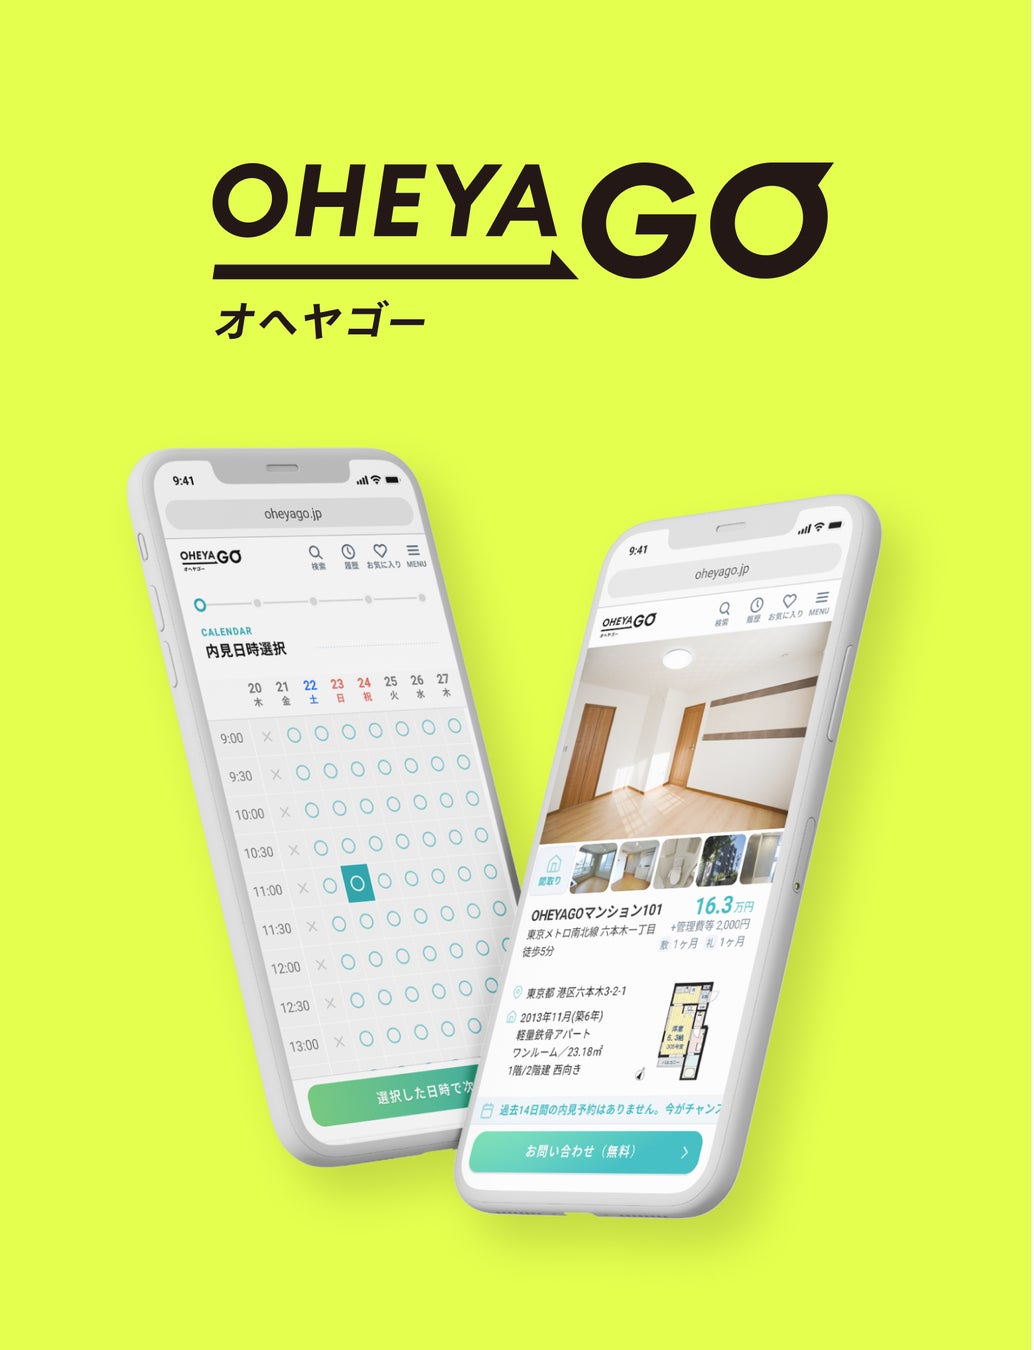 ネット不動産賃貸サービス「OHEYAGO（オヘヤゴー）」で、最適な居住エリアを可視化する「BEST BASHO（ベスト場所）」の提供開始のサブ画像4